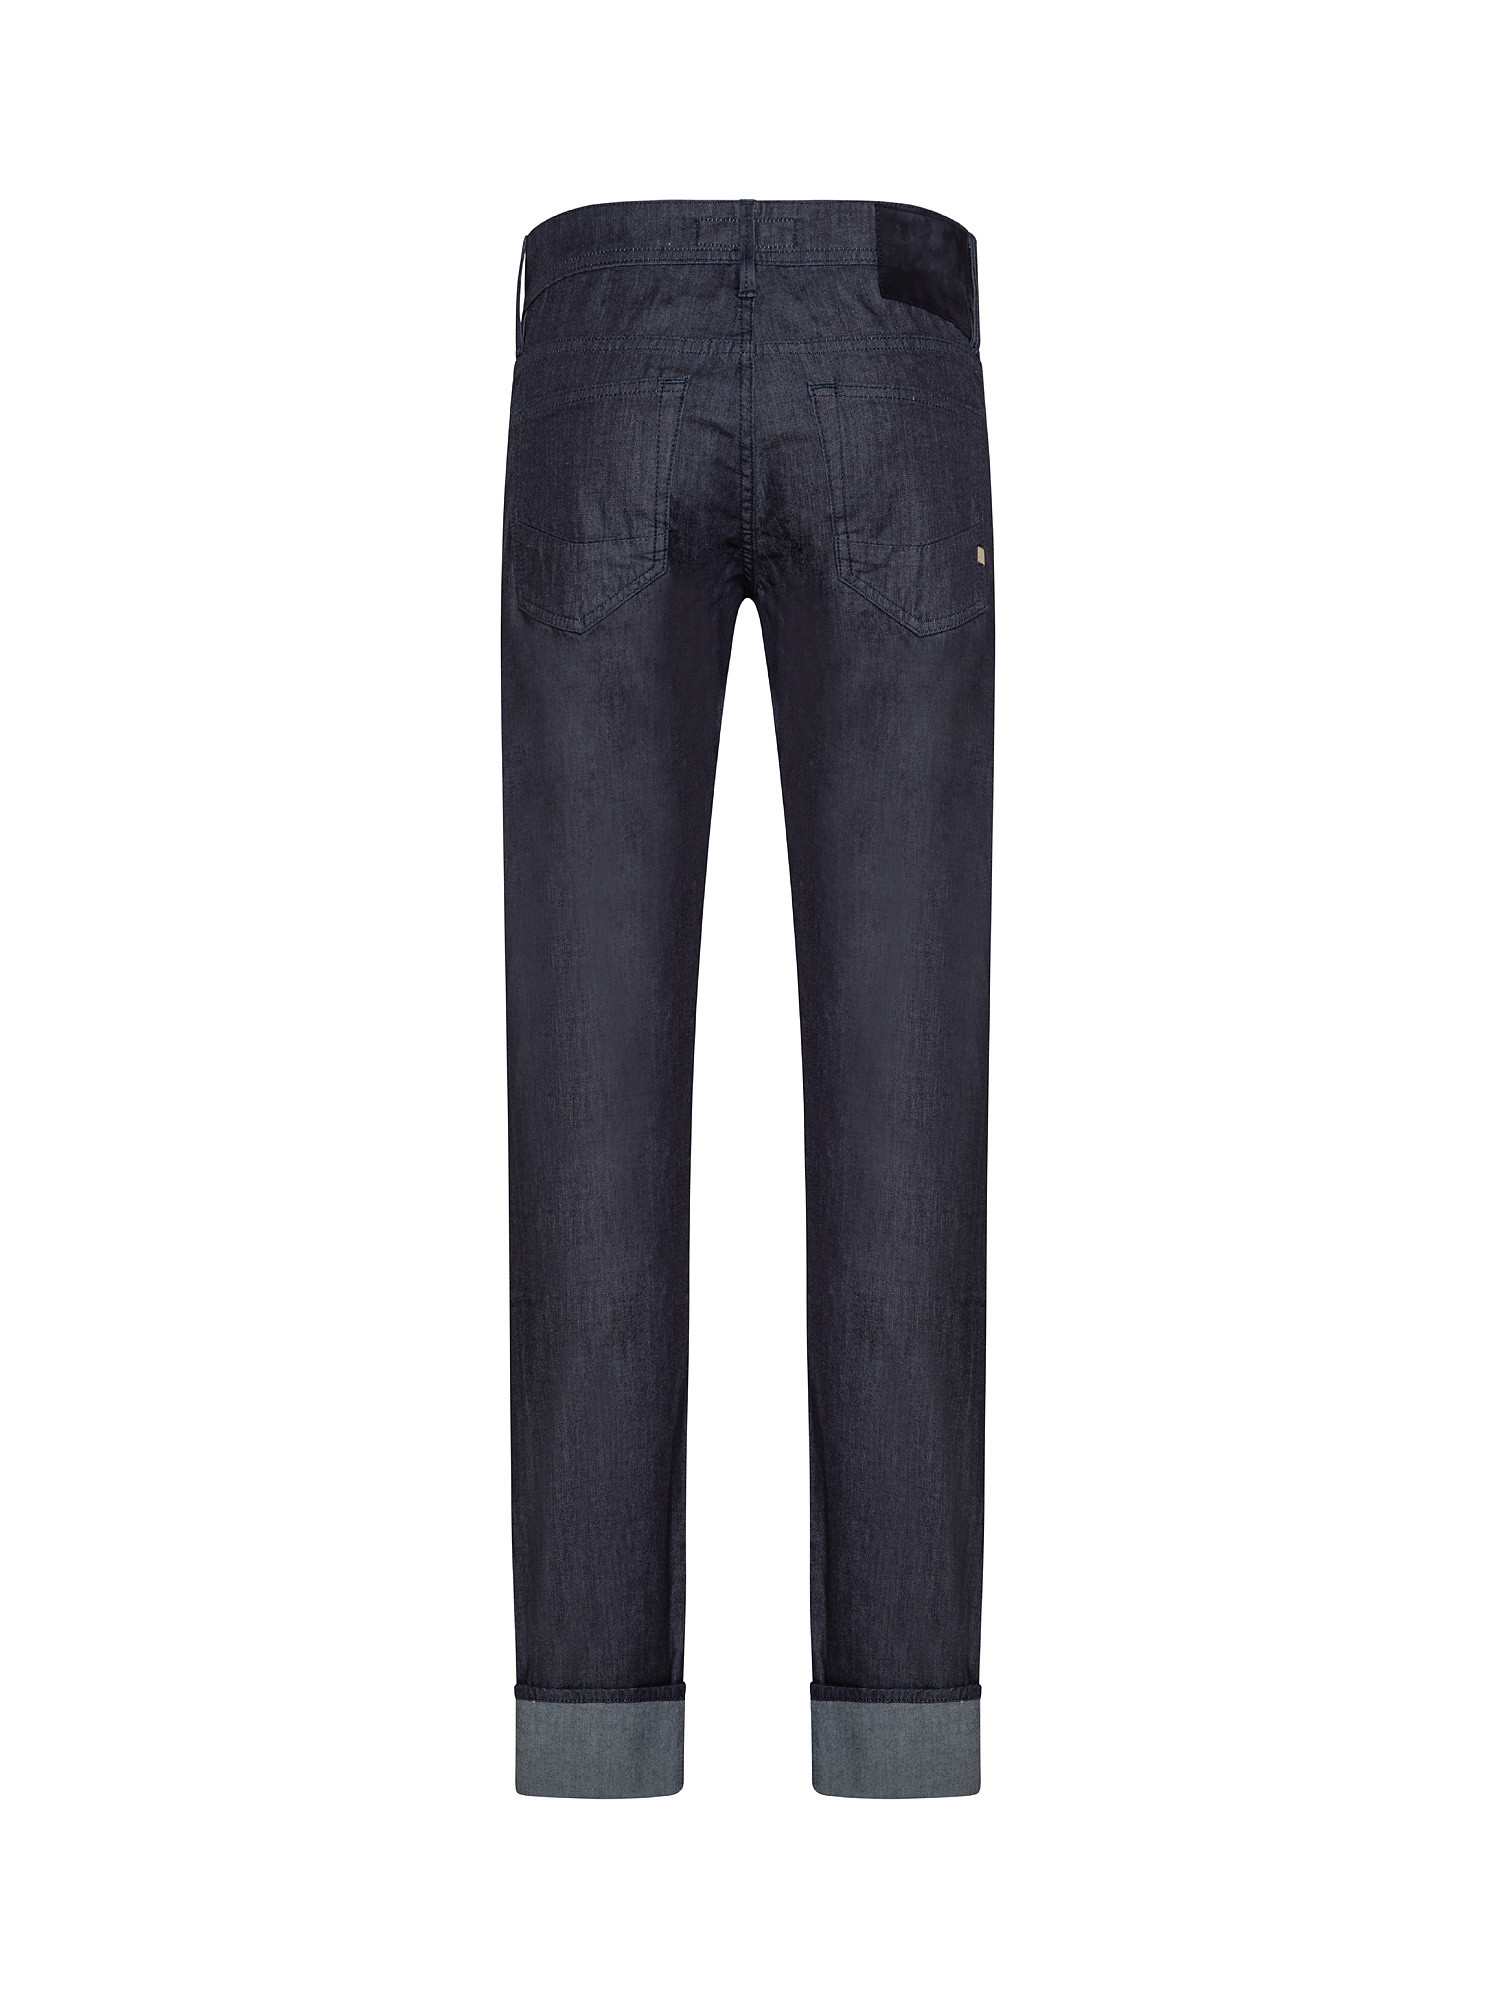 Pantalone denim, Blu, large image number 1